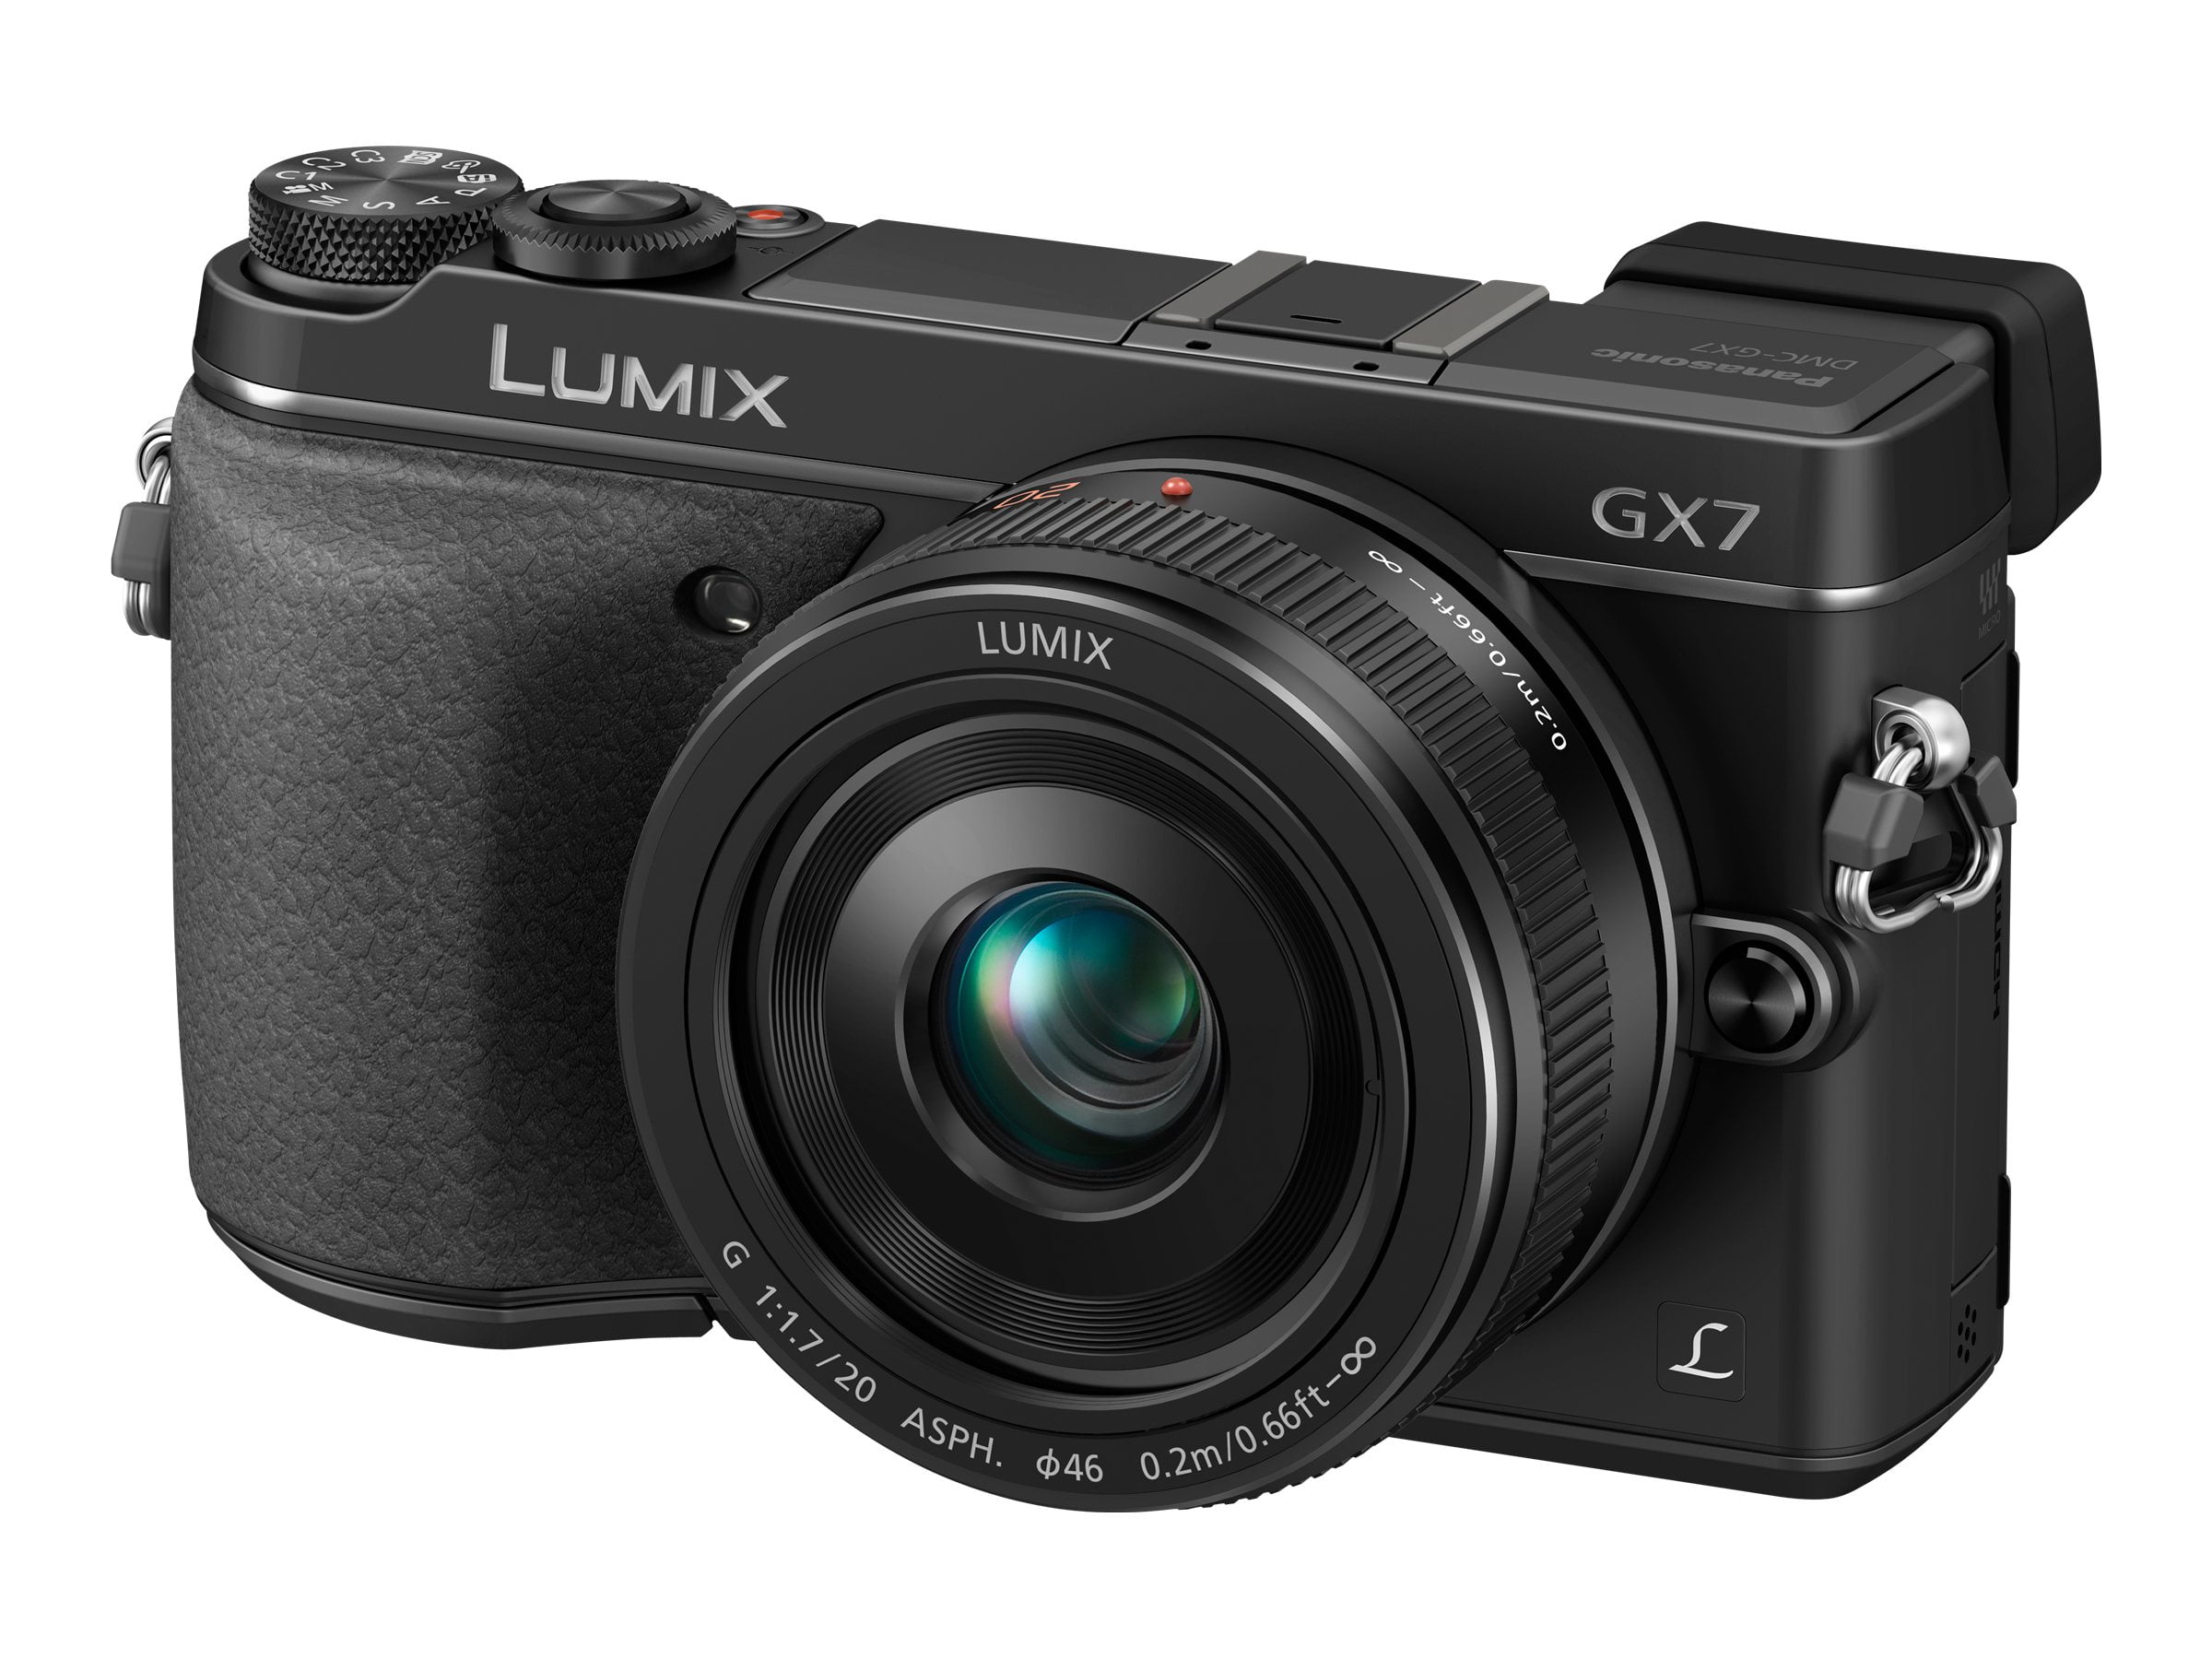 Aantrekkelijk zijn aantrekkelijk deeltje Overleving Panasonic Lumix G DMC-GX7K - Digital camera - mirrorless - 16.0 MP - Four  Thirds - 1080p / 50 fps - 3x optical zoom 14-42mm lens - Wi-Fi, NFC - black  - Walmart.com